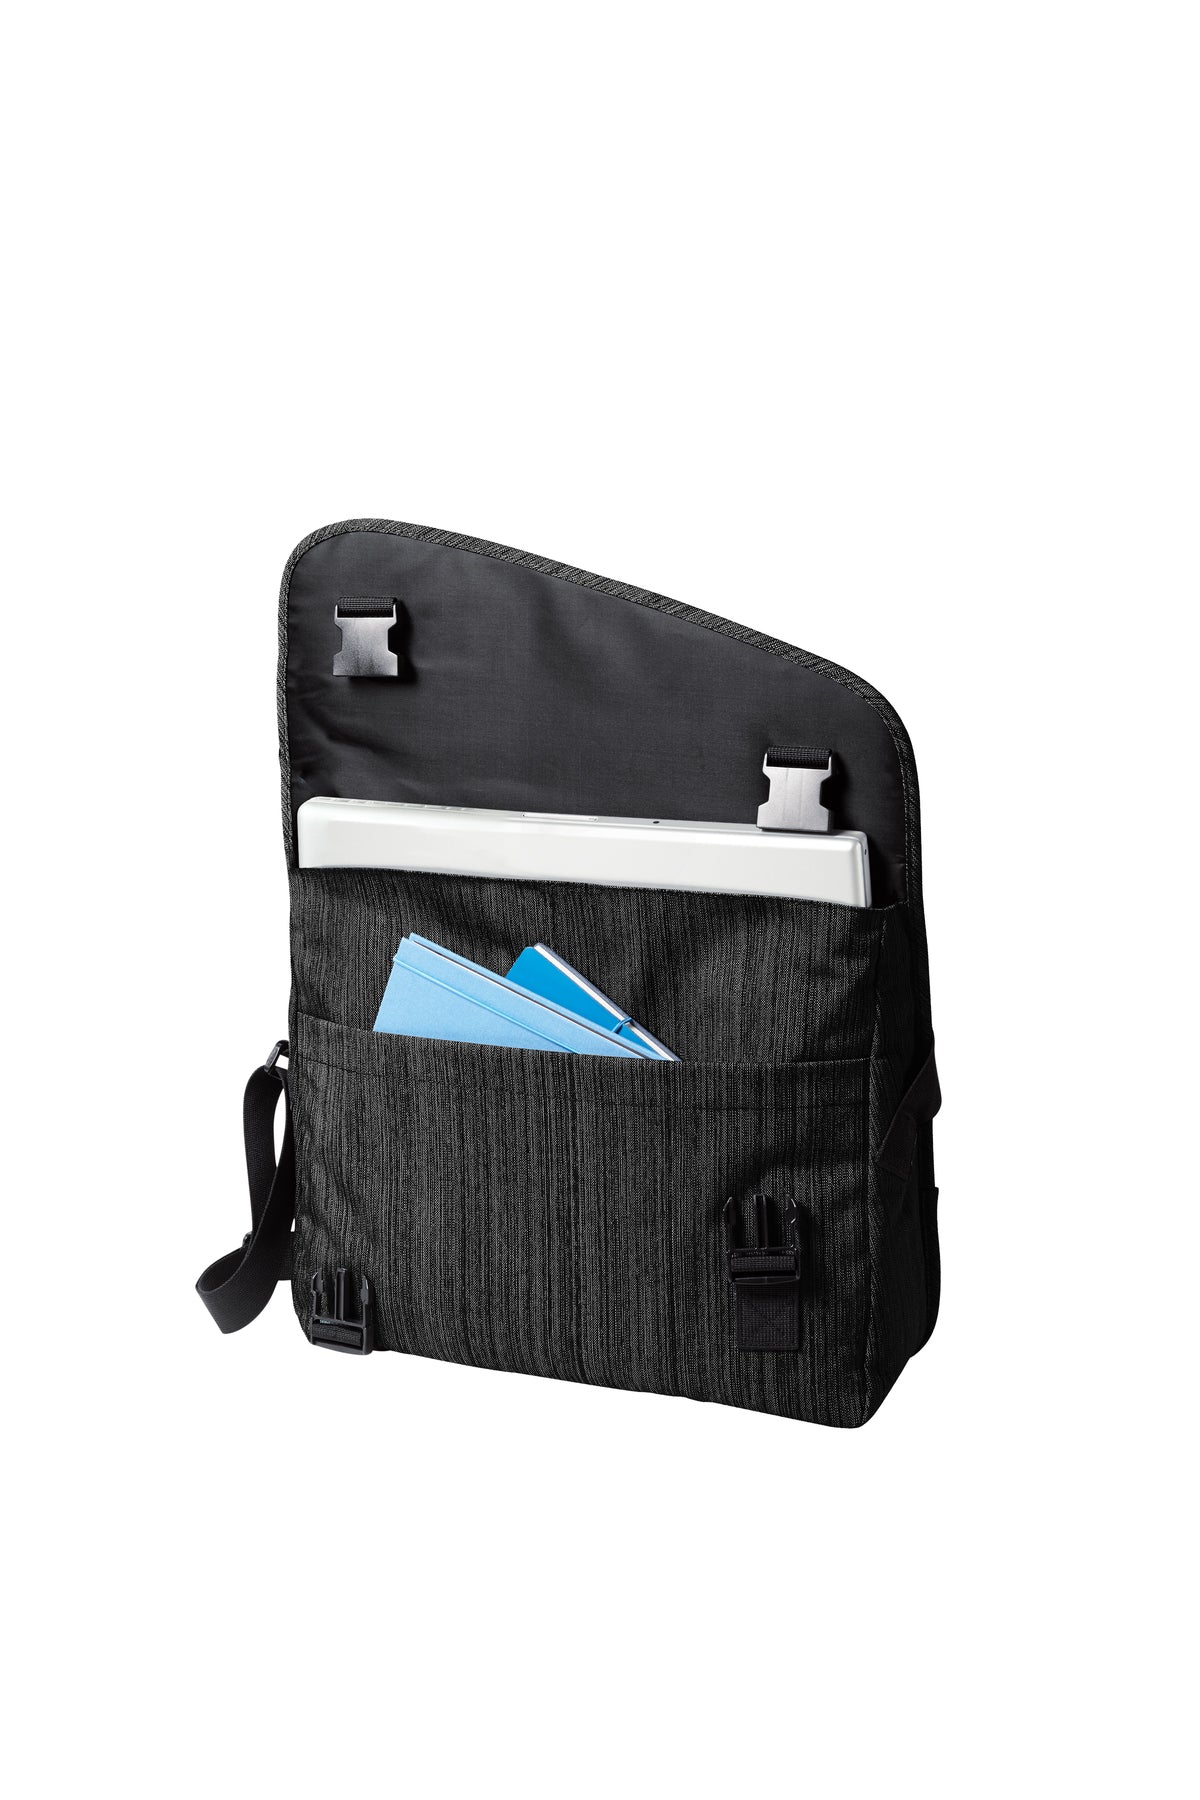 Texas Tech Messenger Bag TTU Travel Laptop Computer Bag